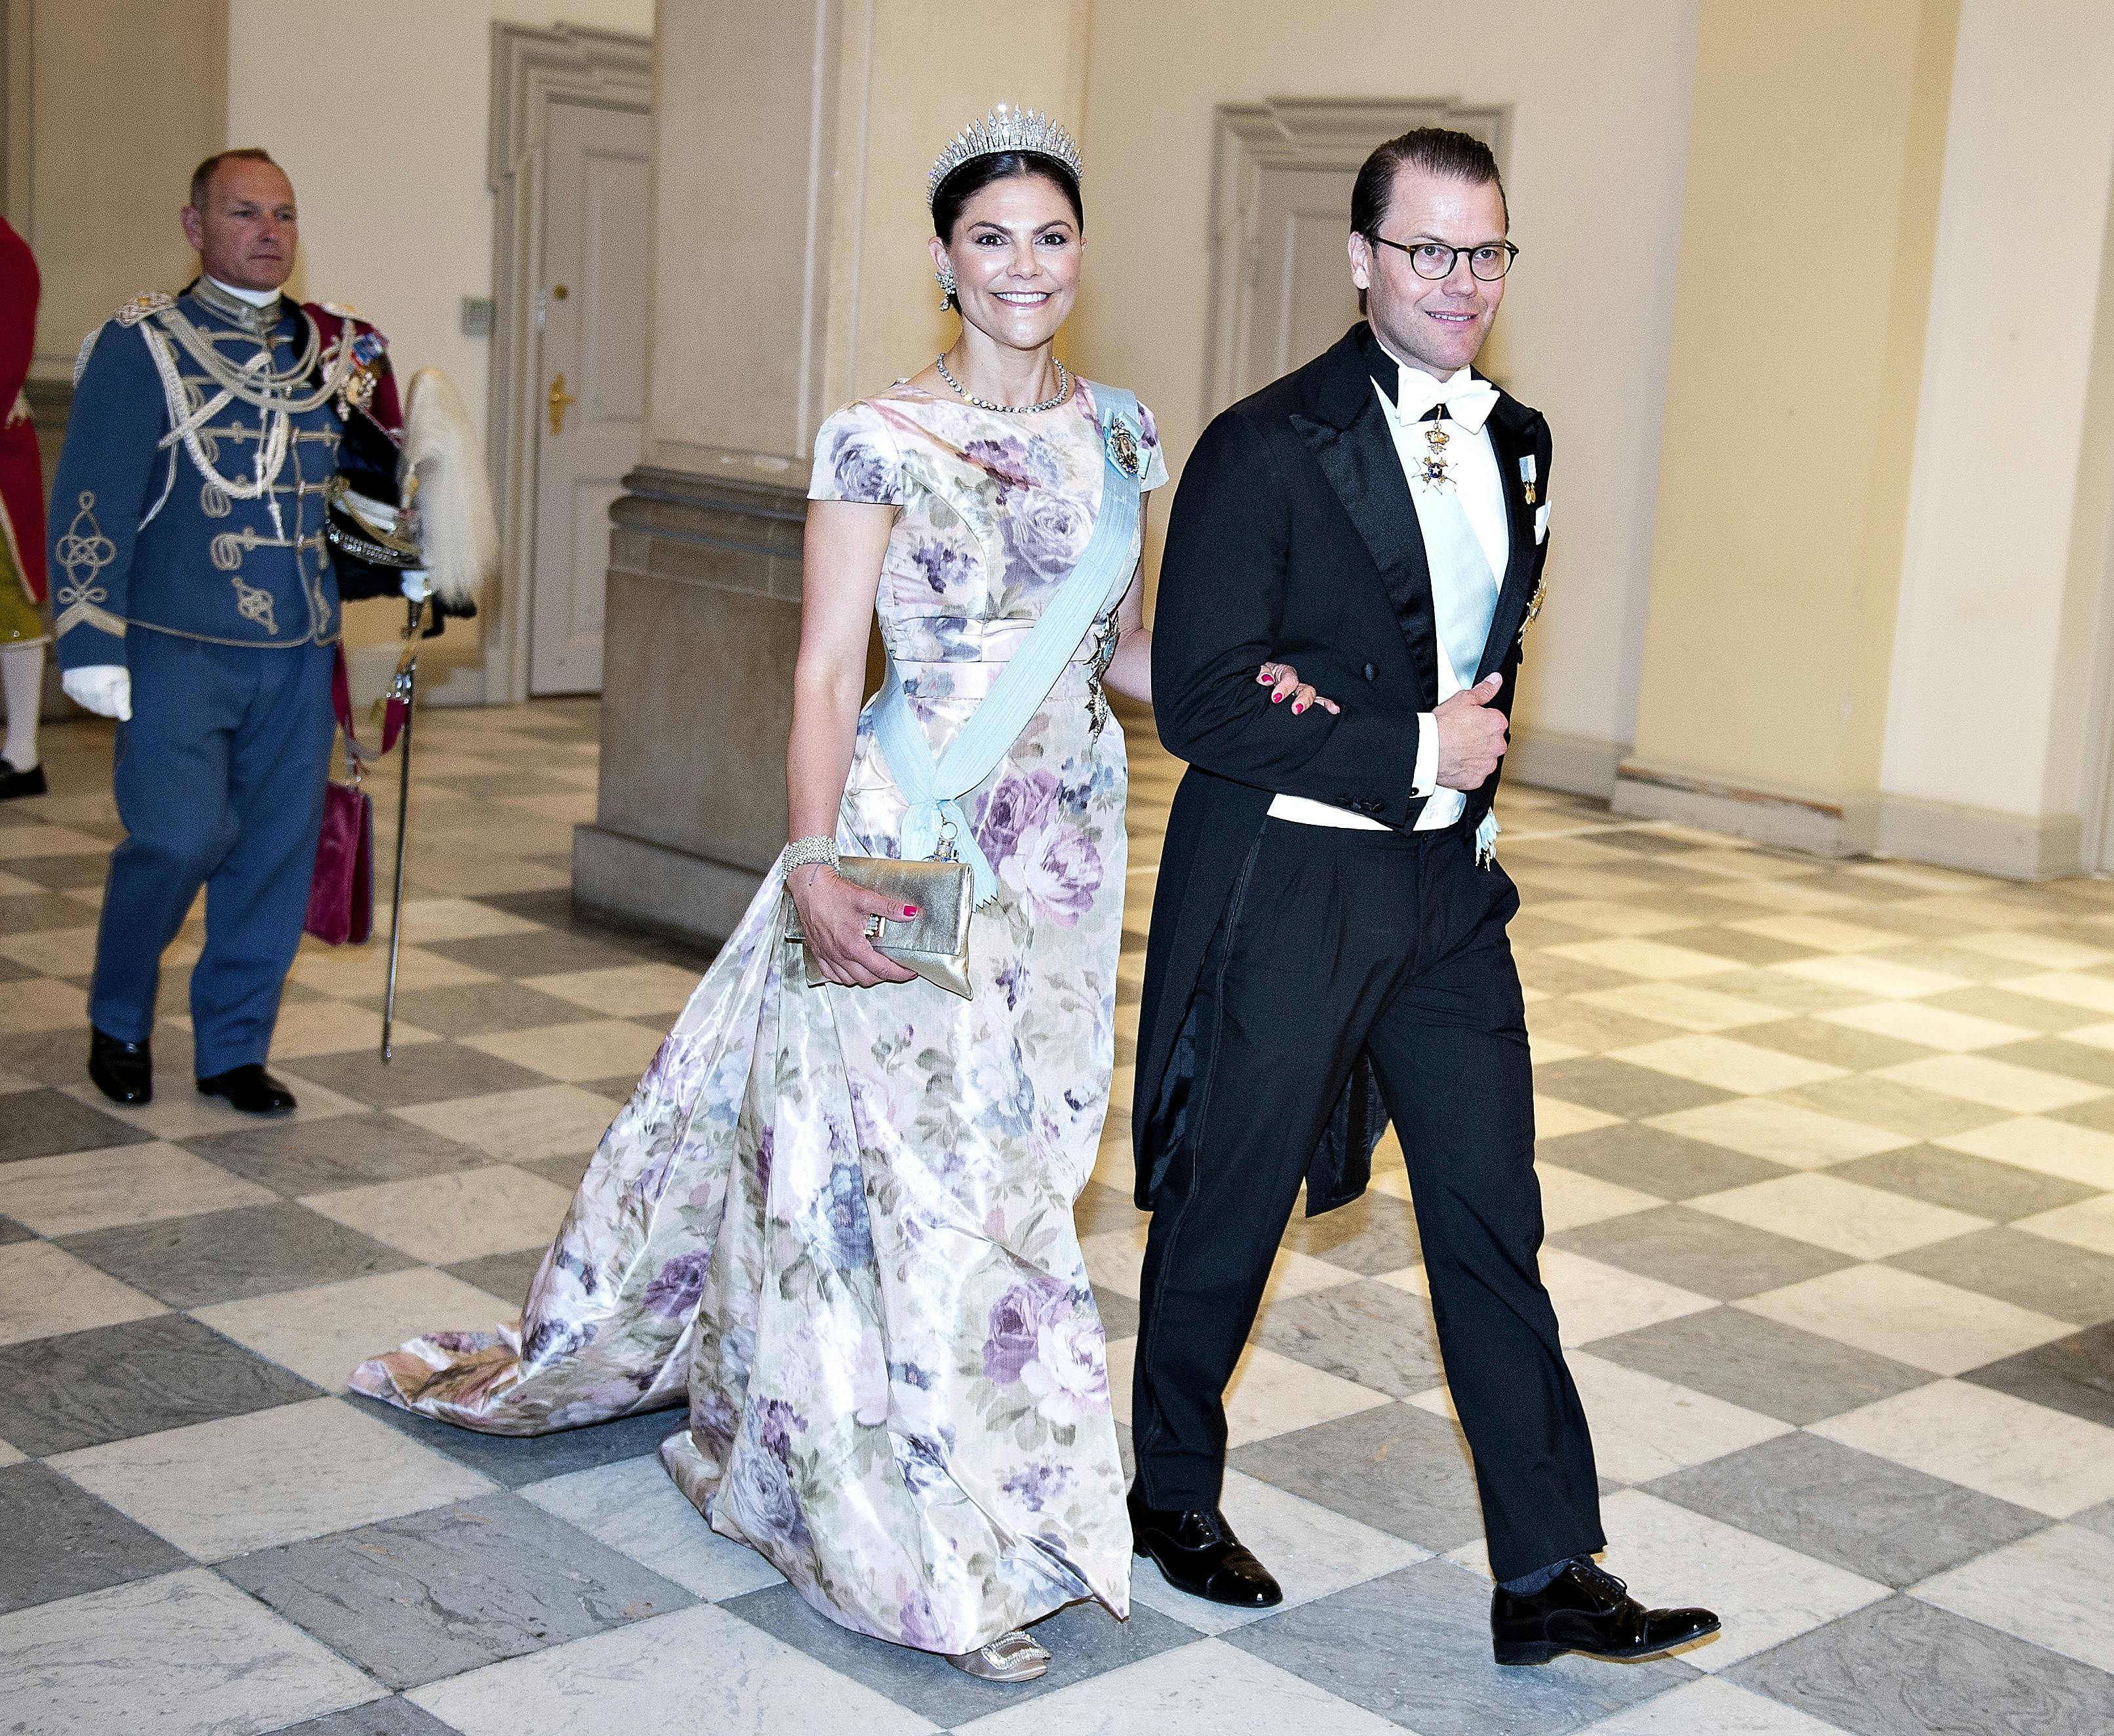 Sveriges kronprinsesse Victoria og prins Daniel ved gallataffel på Christiansborg Slot i anledning af kronprinsens 50 års fødselsdag.
